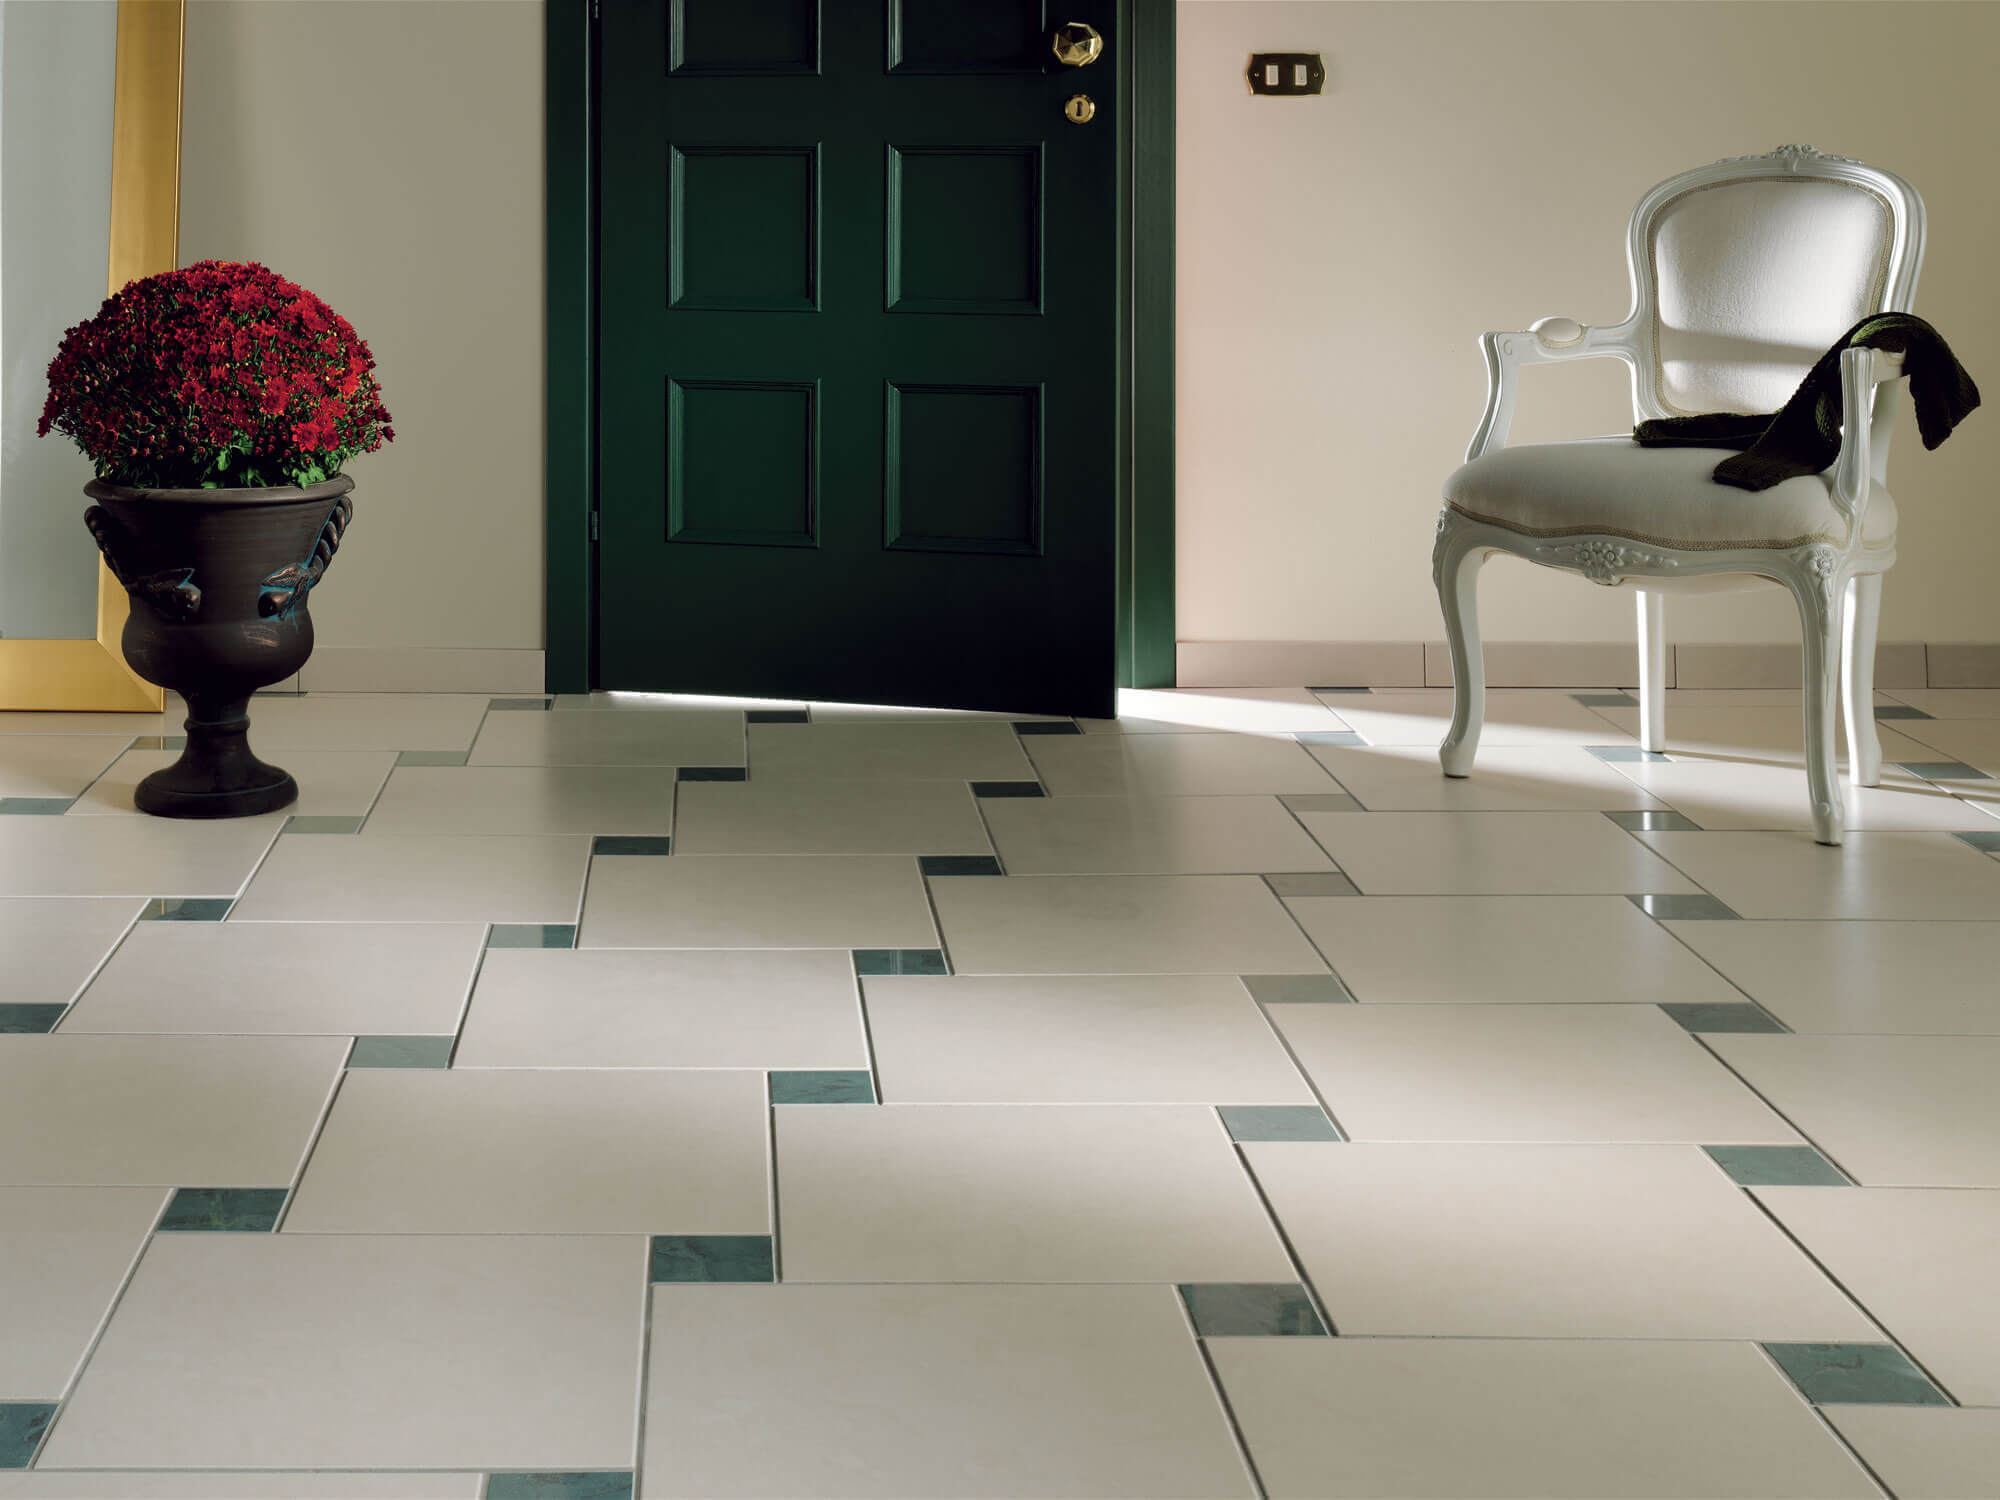 floor tiles in the hallway design ideas